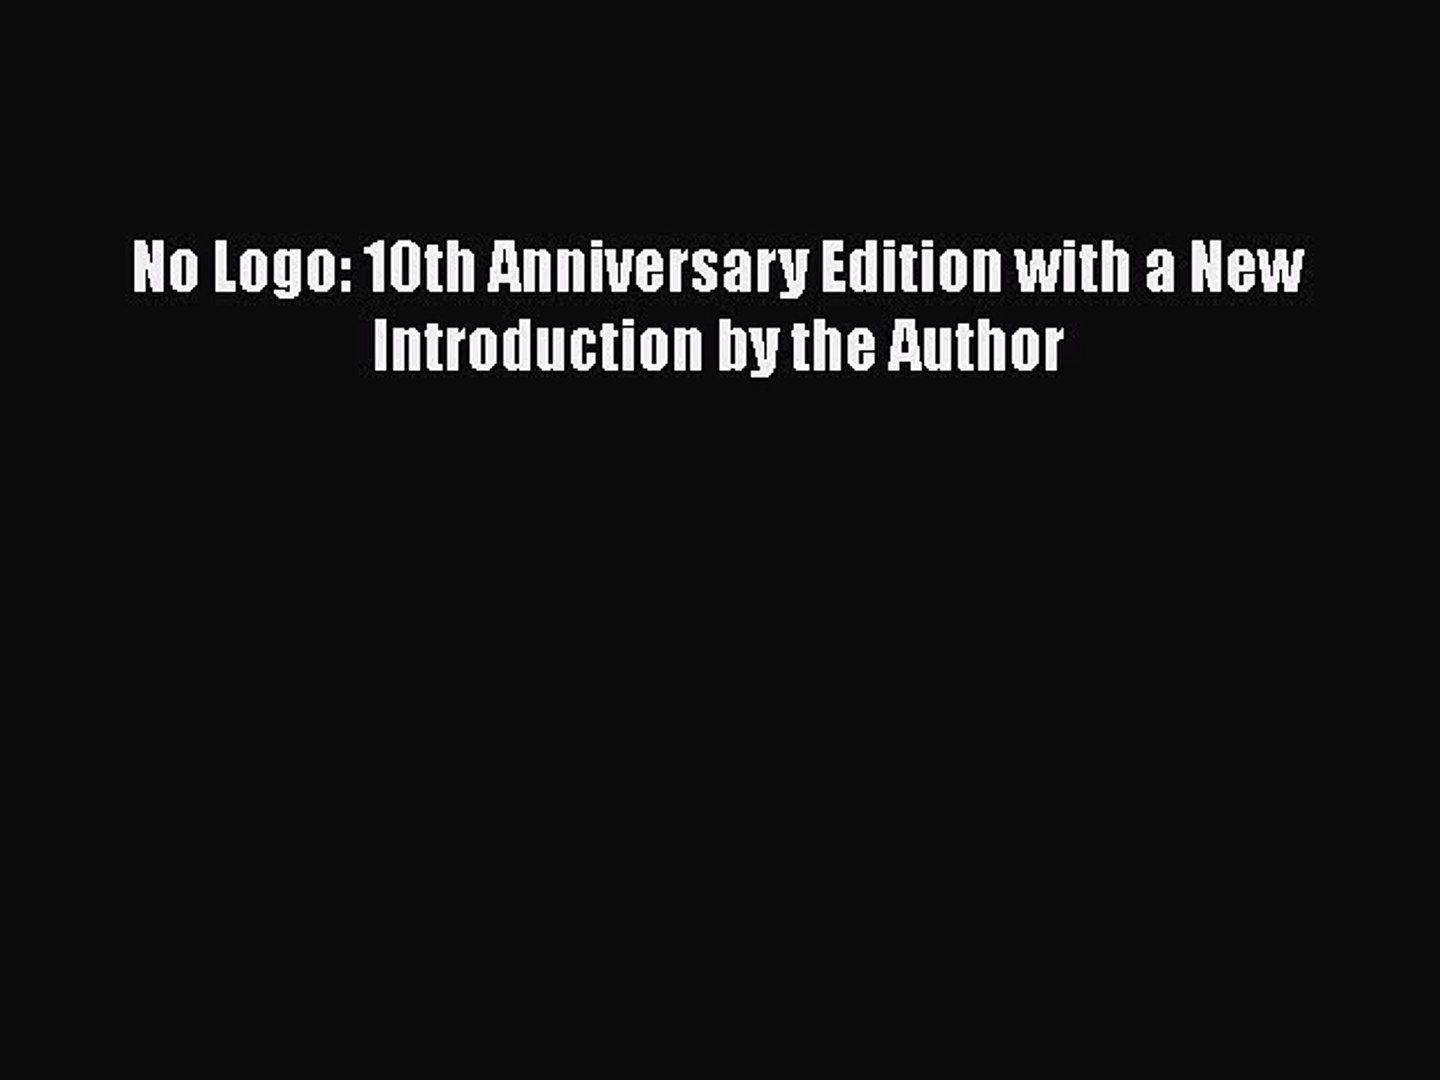 10th Anniversary Edition Logo - PDF No Logo: 10th Anniversary Edition with a New Introduction by